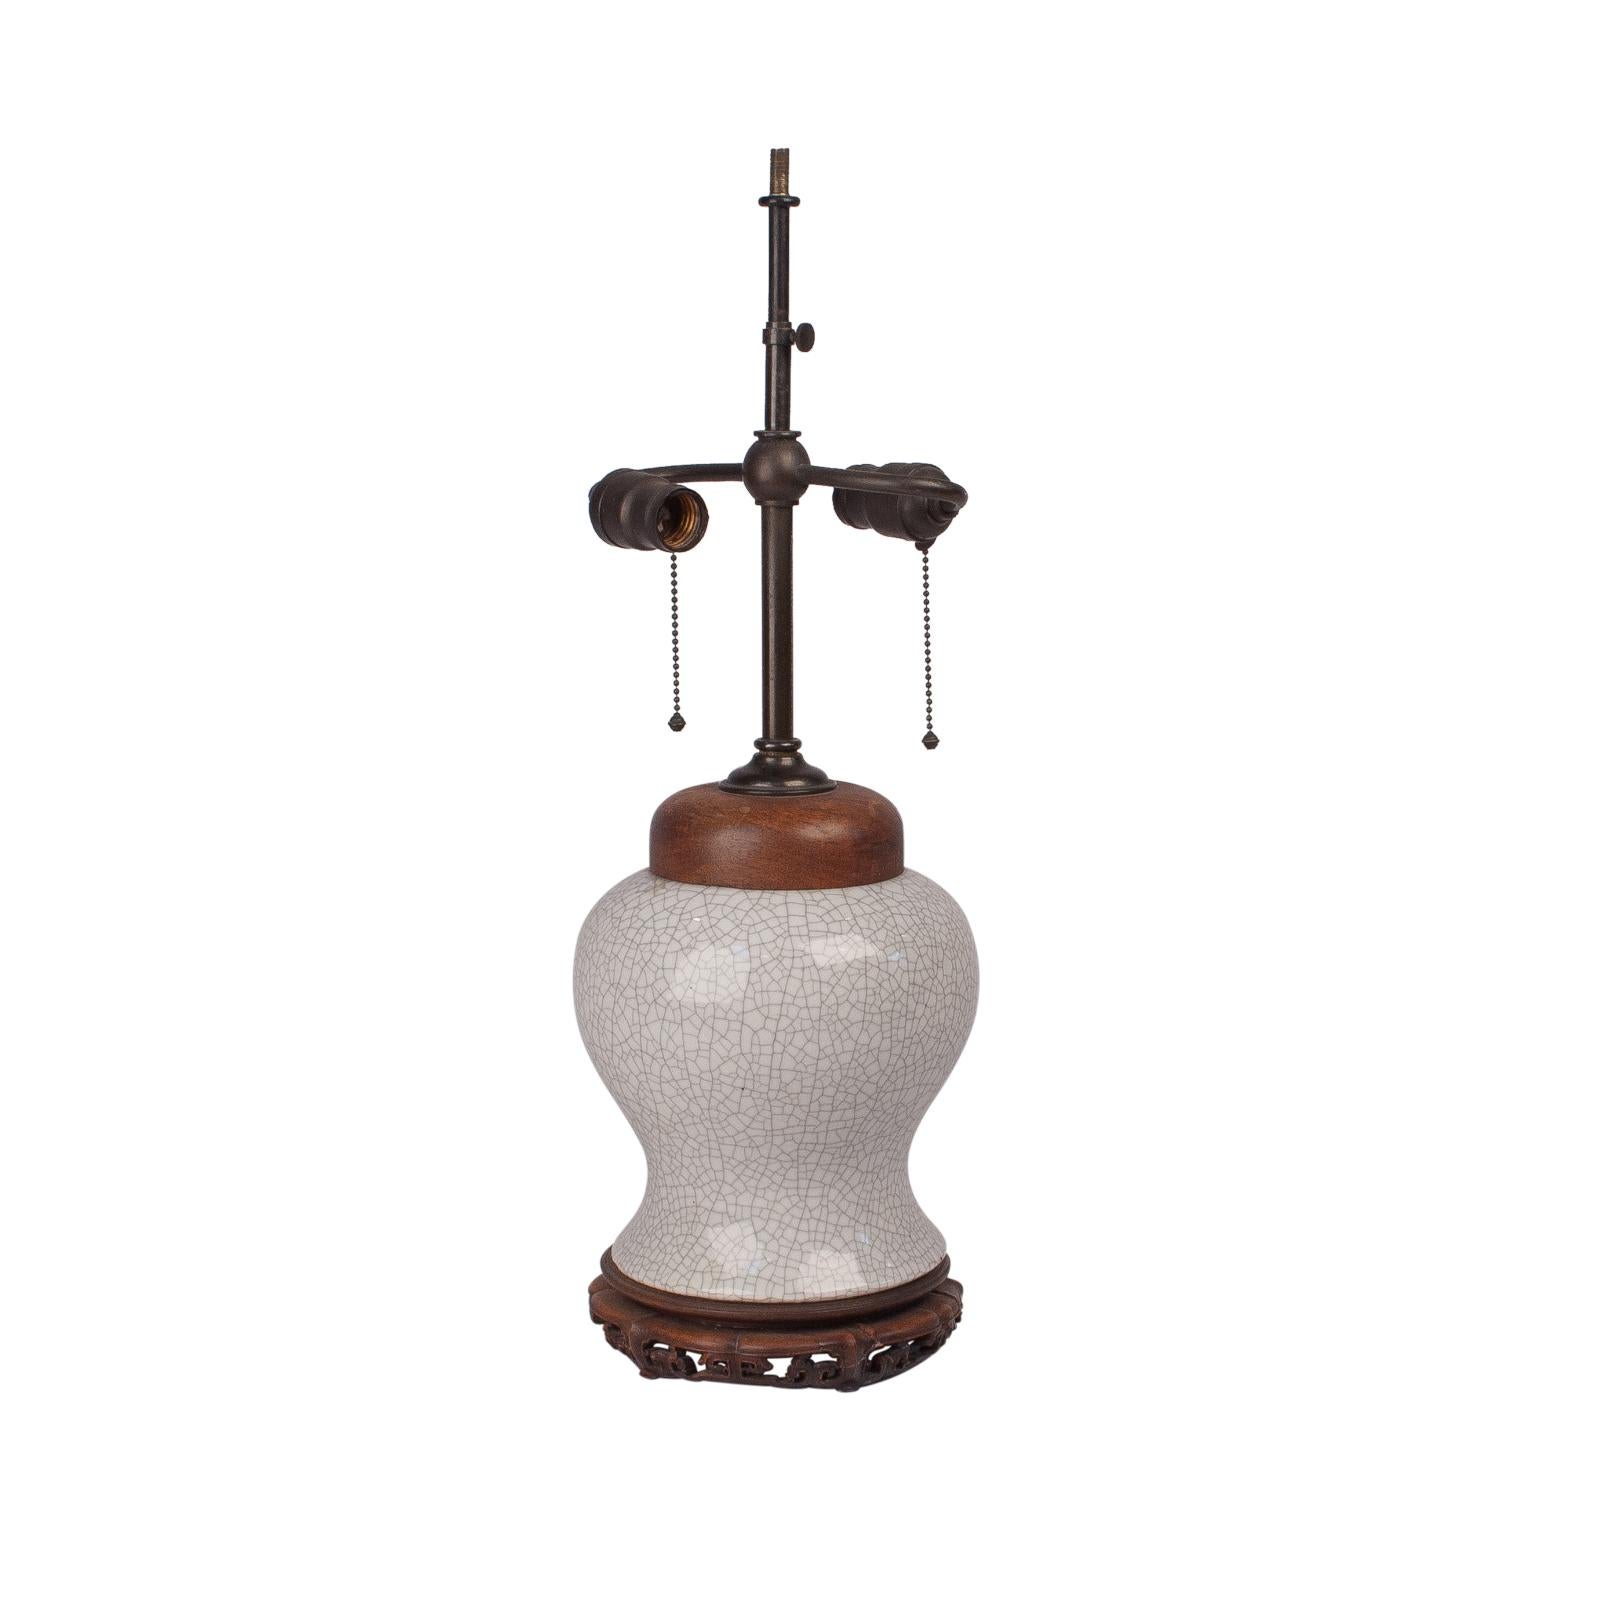 Ming Guan Ware Vase Lamp, China, circa 1850